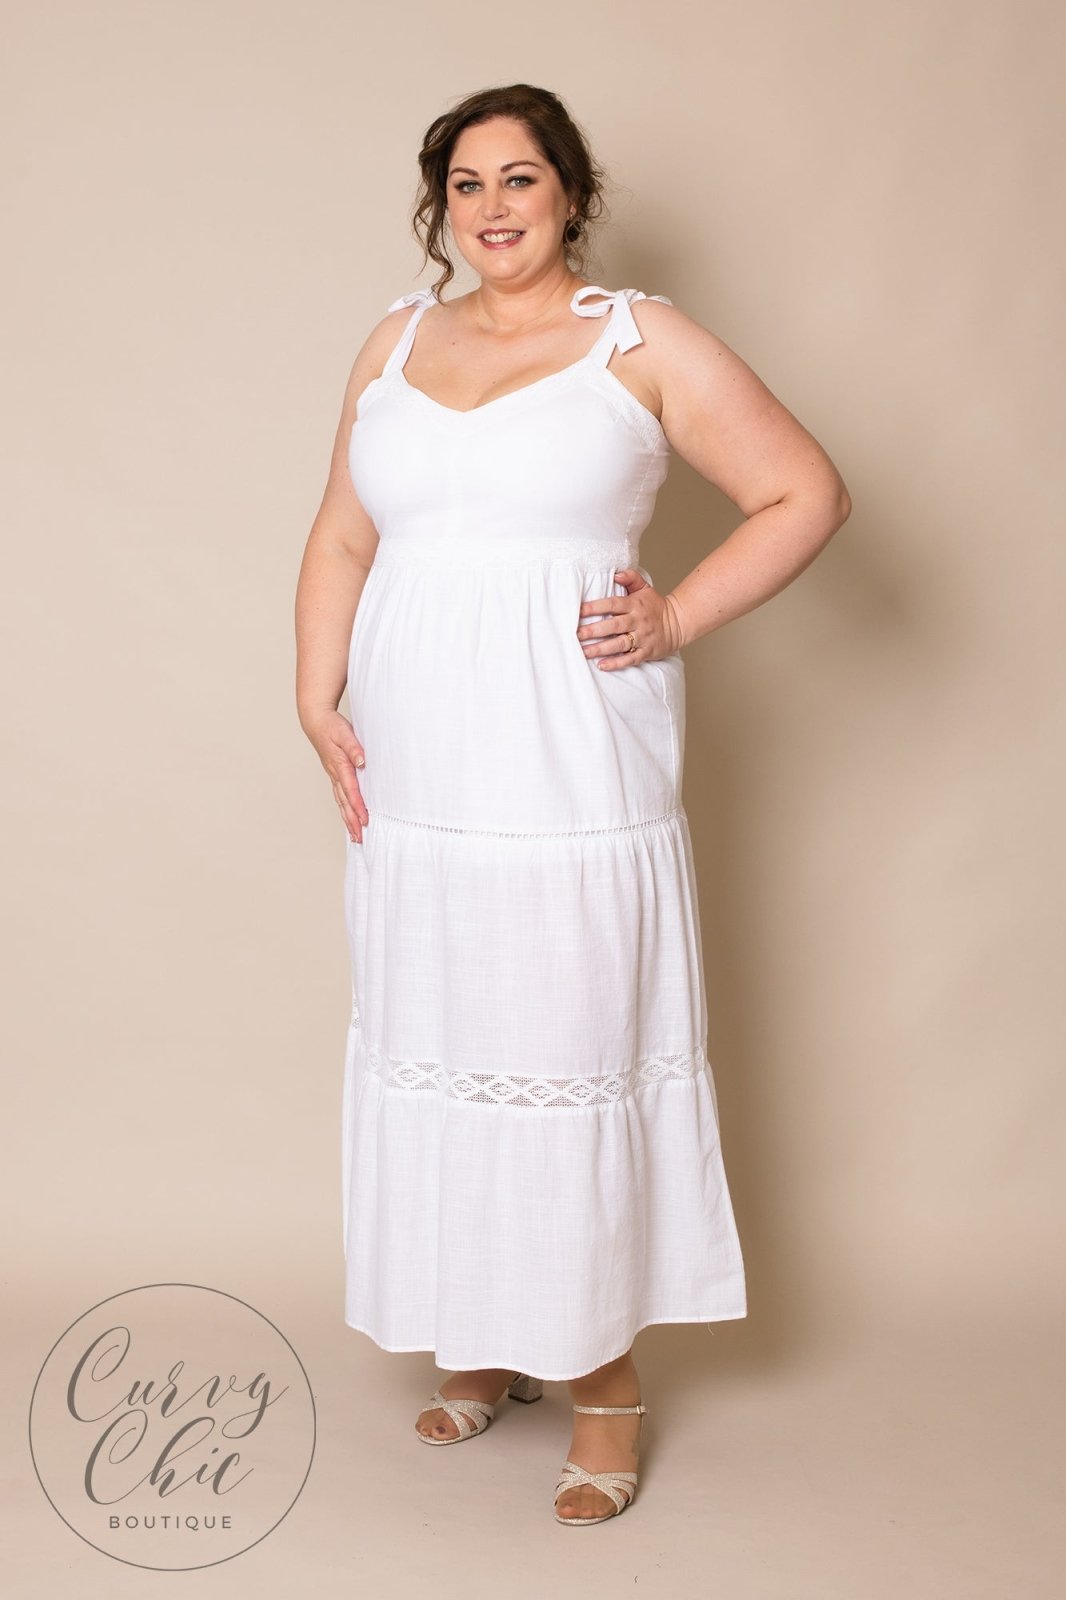 Ross Plus Size White Dresses Deals | bellvalefarms.com